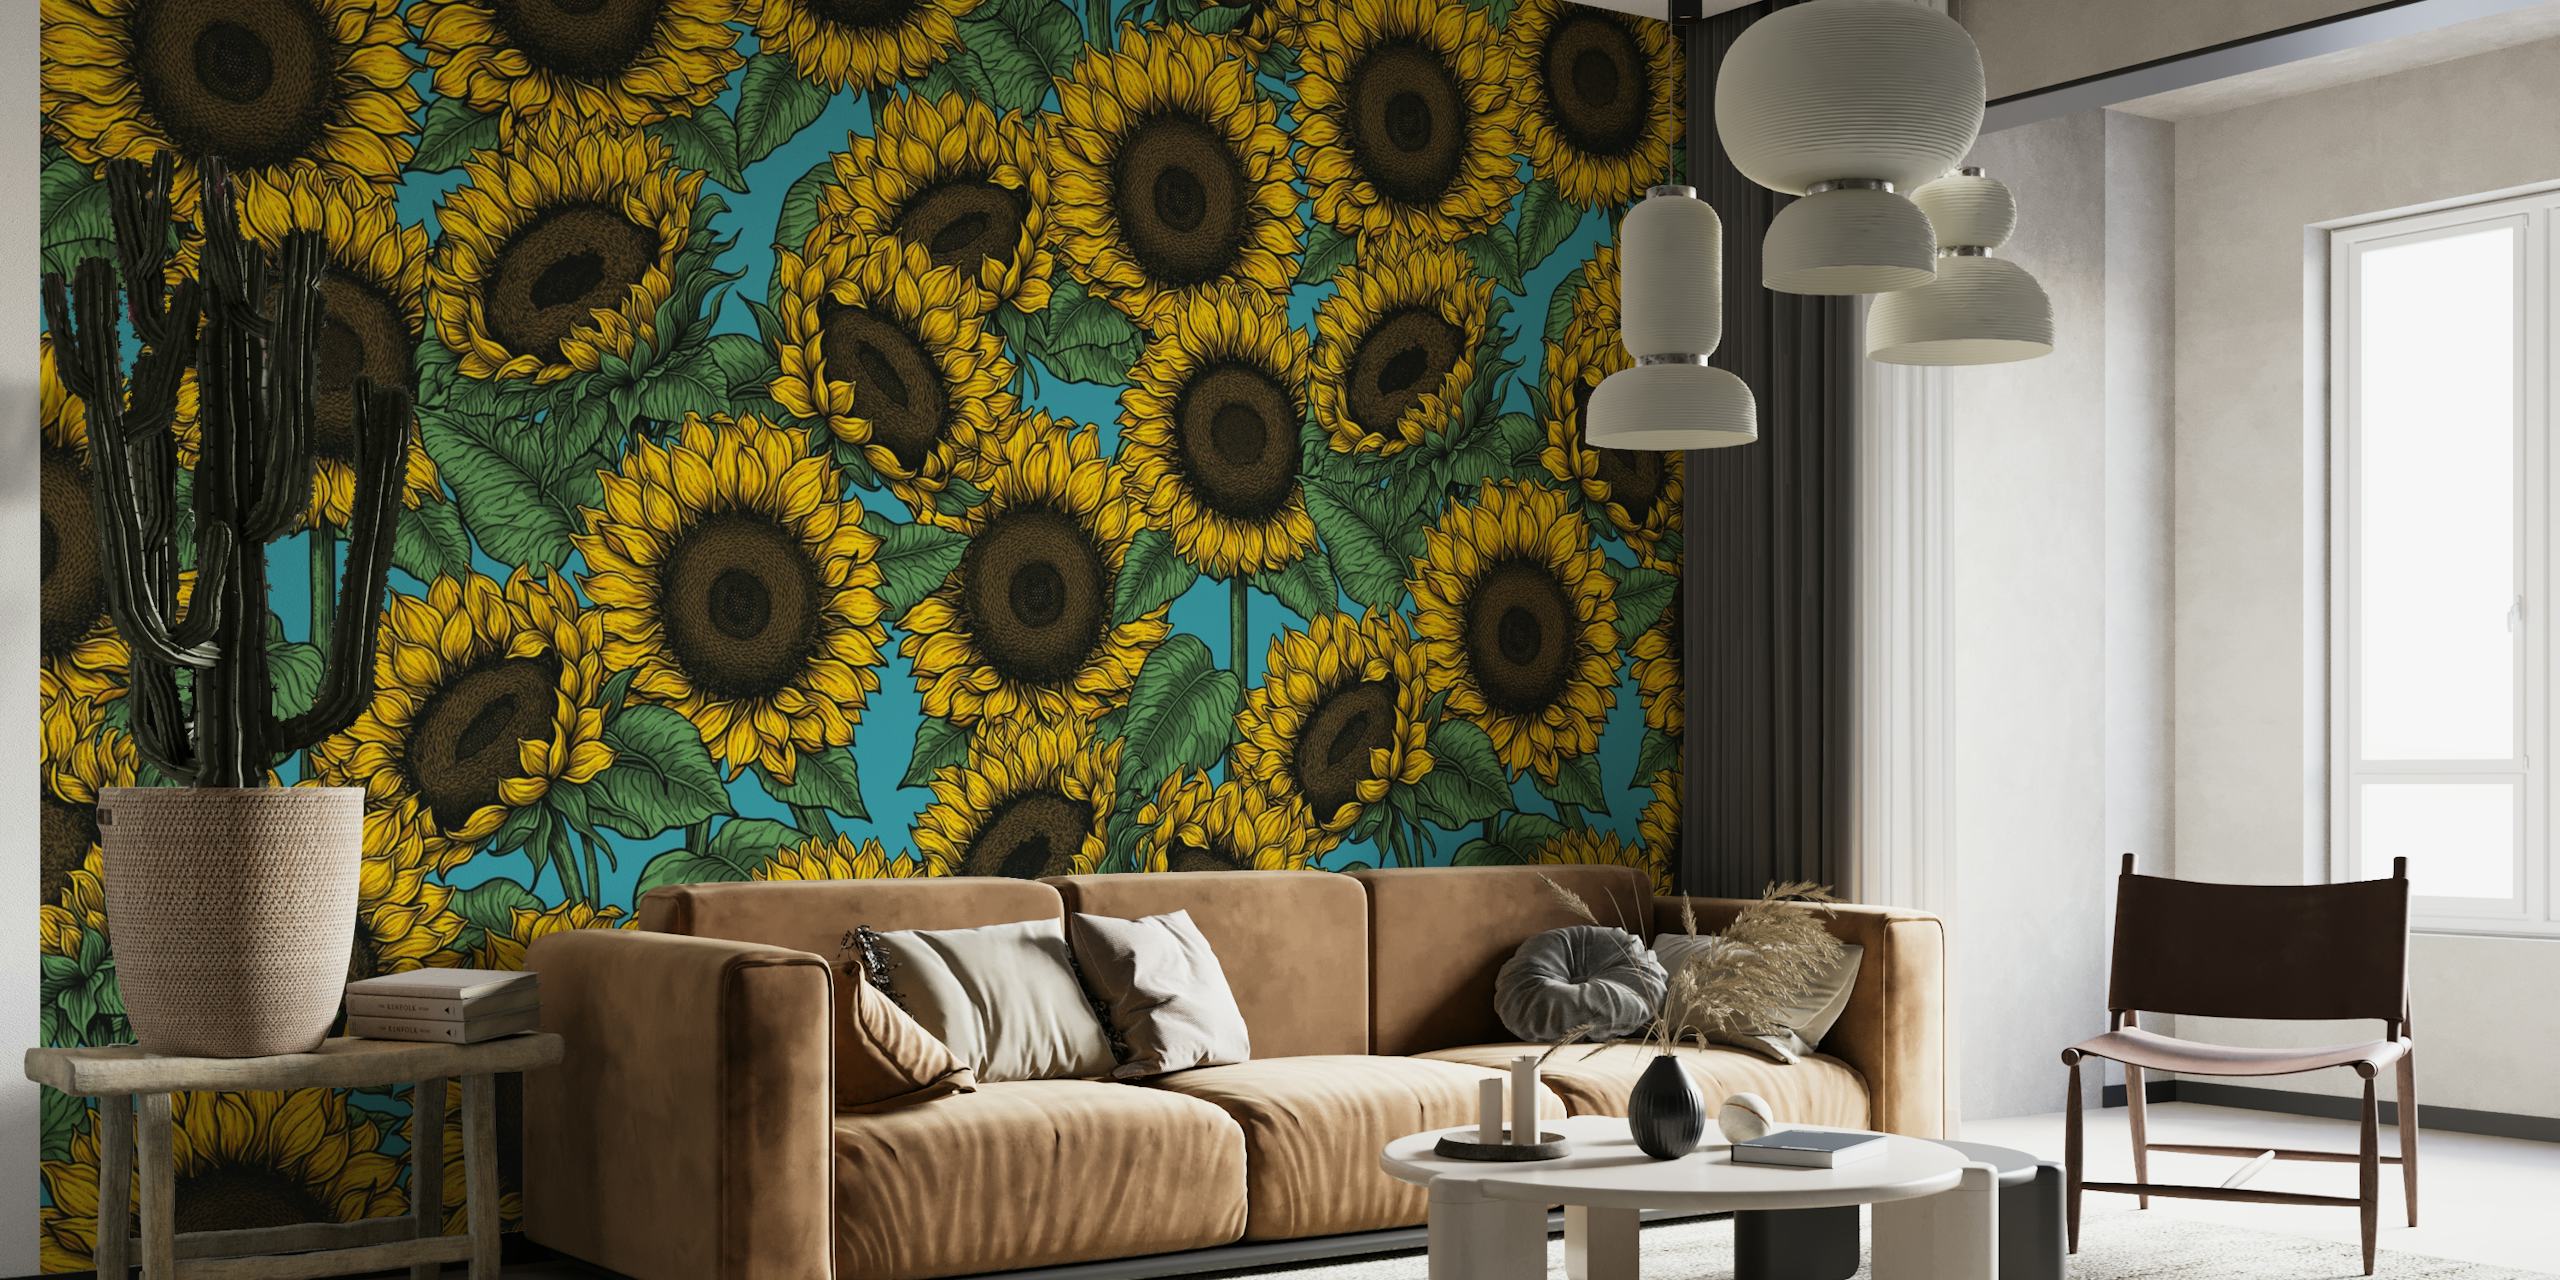 Zářivá fototapeta slunečnice s bohatým kontrastním pozadím, ideální pro přidání květinového nádechu do každé místnosti.